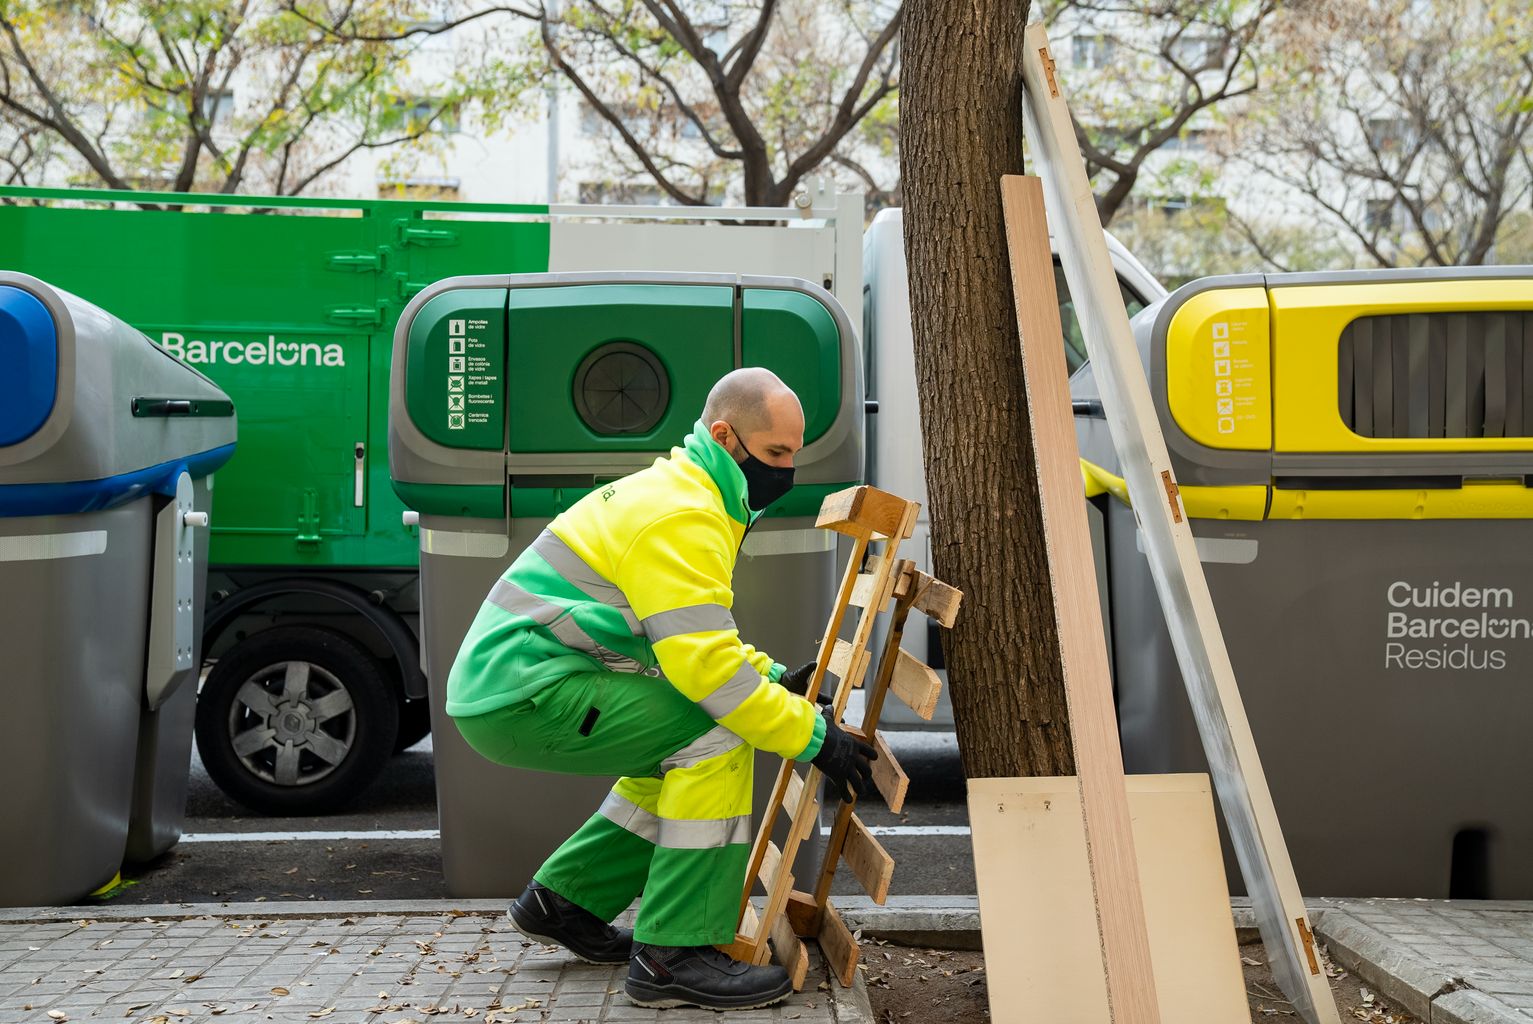 Un trabajador del servicio de limpieza (Cuidem Barcelona Residus) recoge unas maderas y muebles abandonados en el alcorque de un árbol junto a unos contenedores de reciclaje